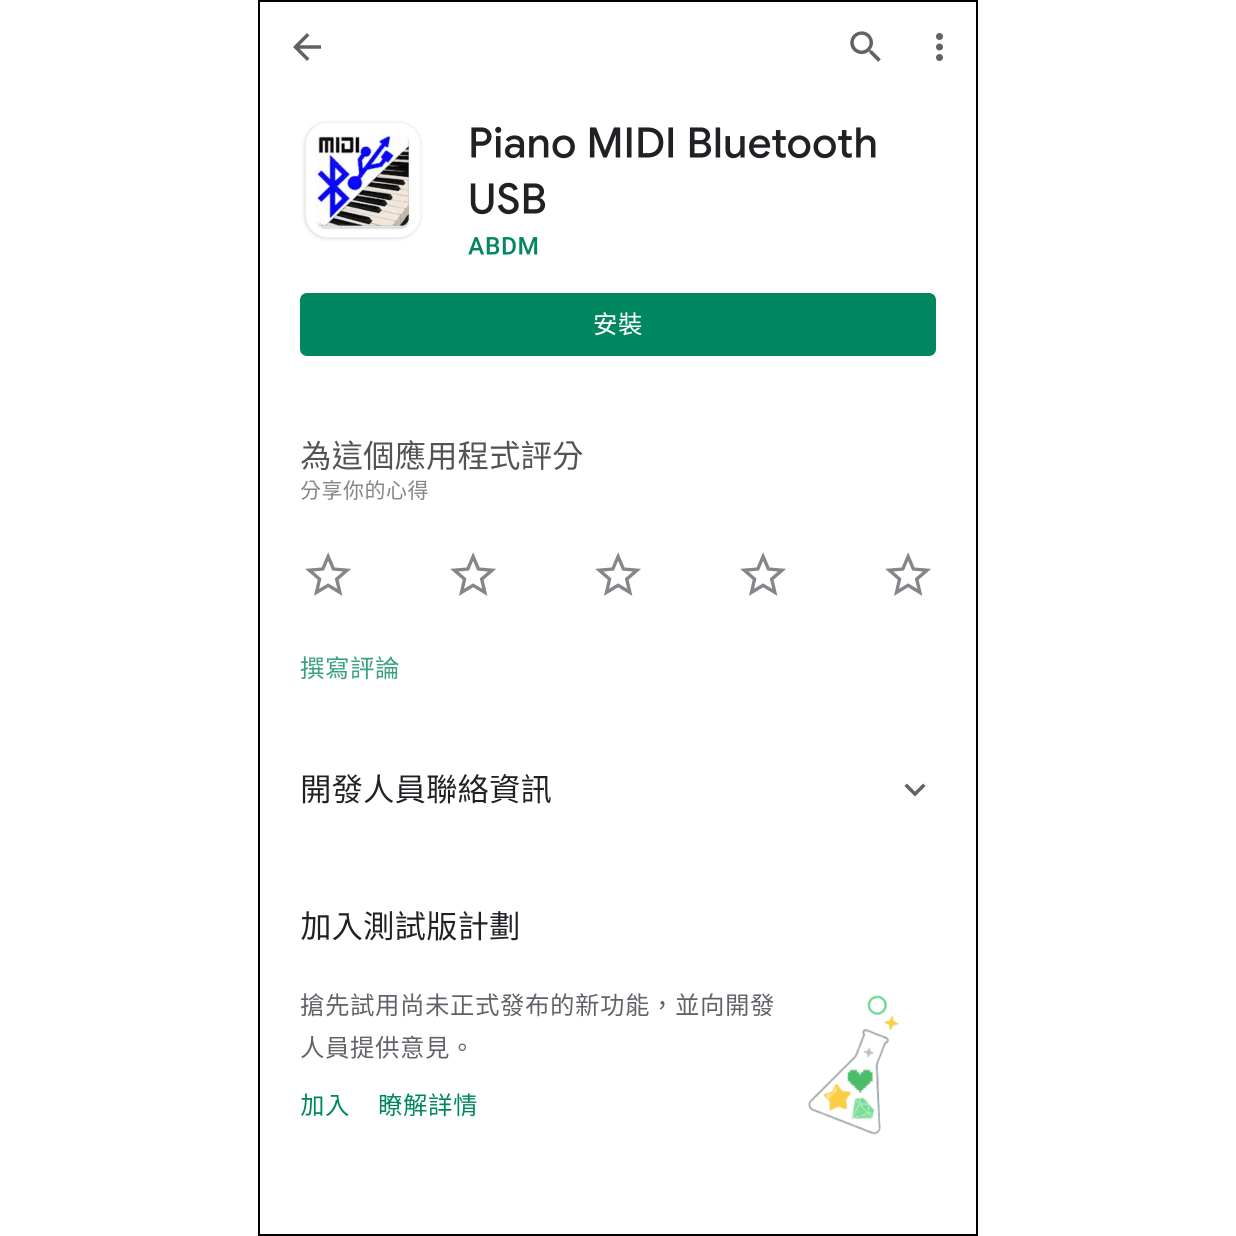 1. 安装应用程序 在Google Play中寻找并安装 Piano MIDI Bluetooth USB。